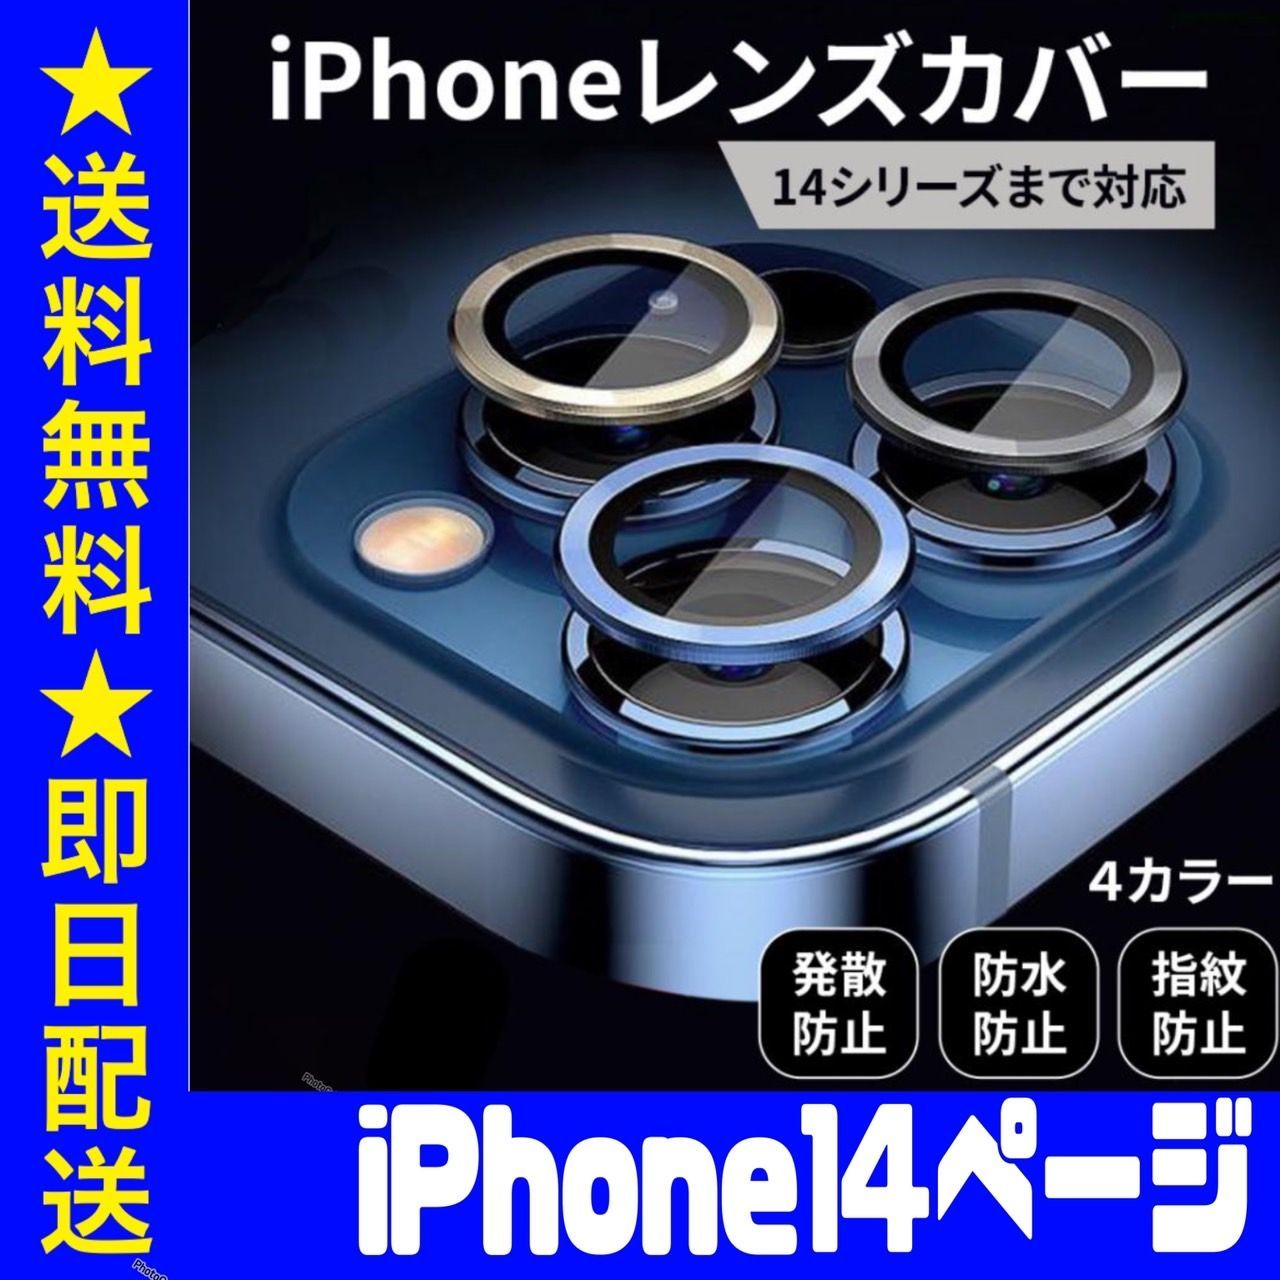 iPhone14 専用ページ